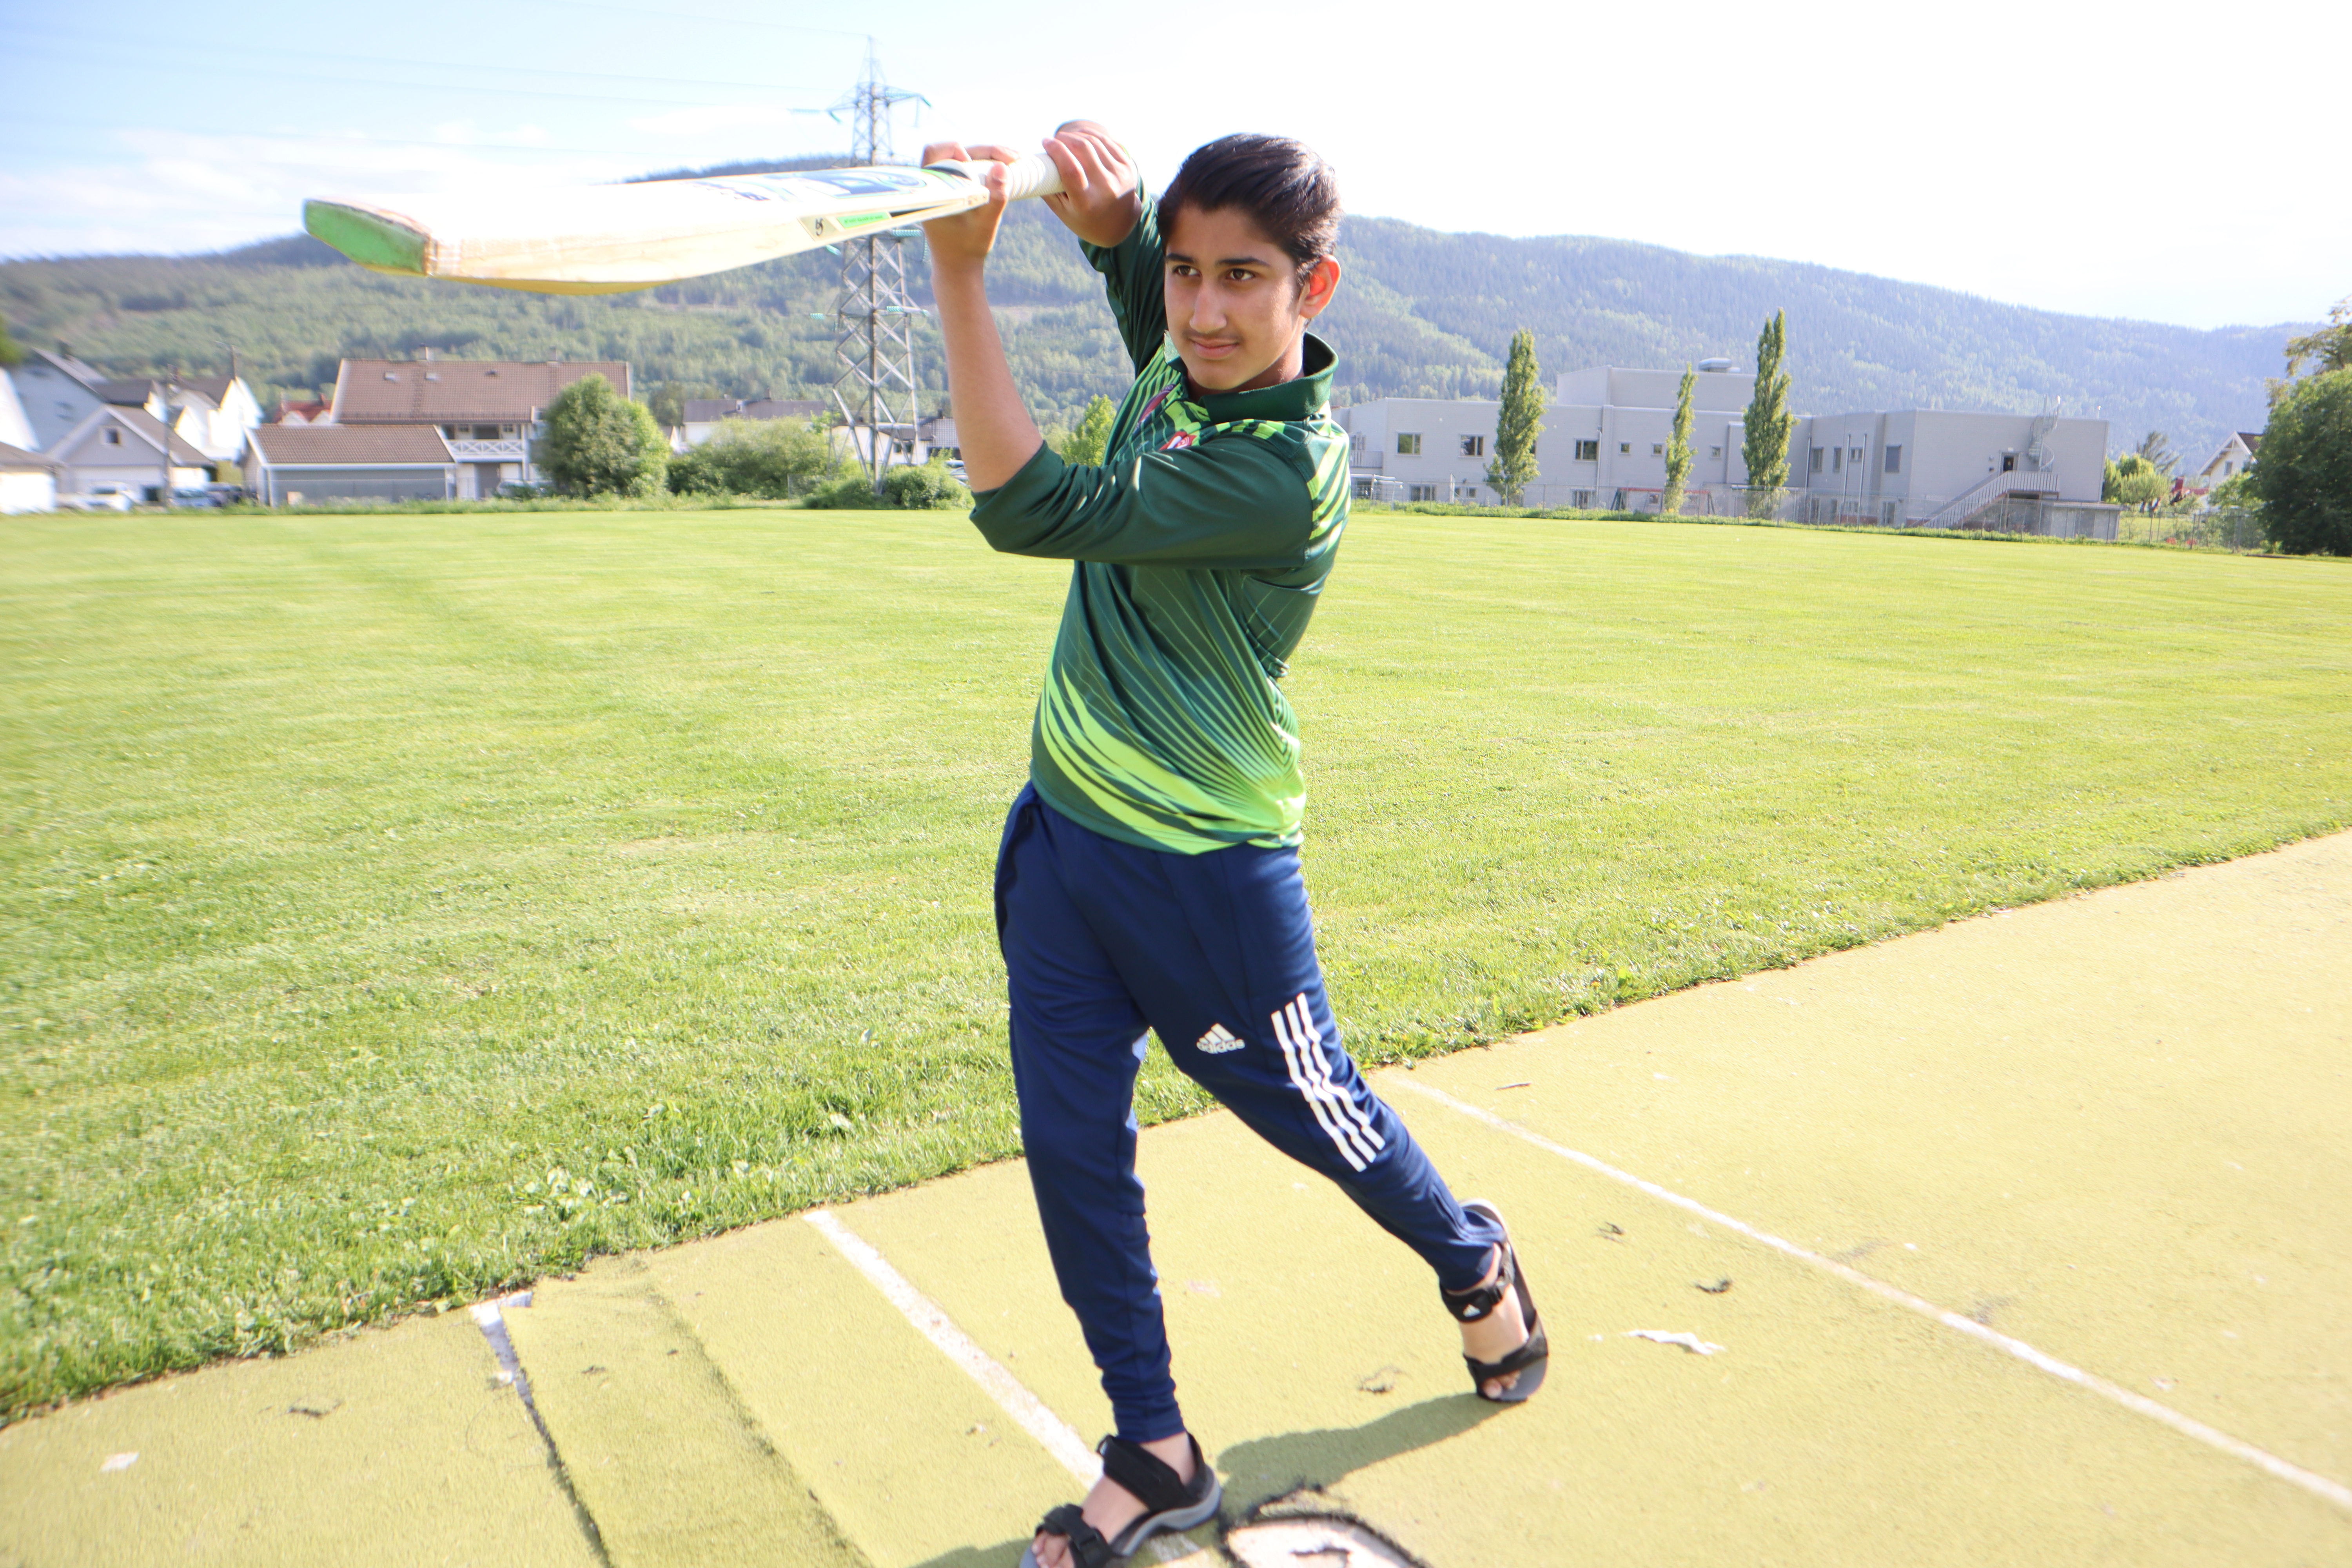 Subhan Ahmed (12) drømmer om å bli landslagspiller.